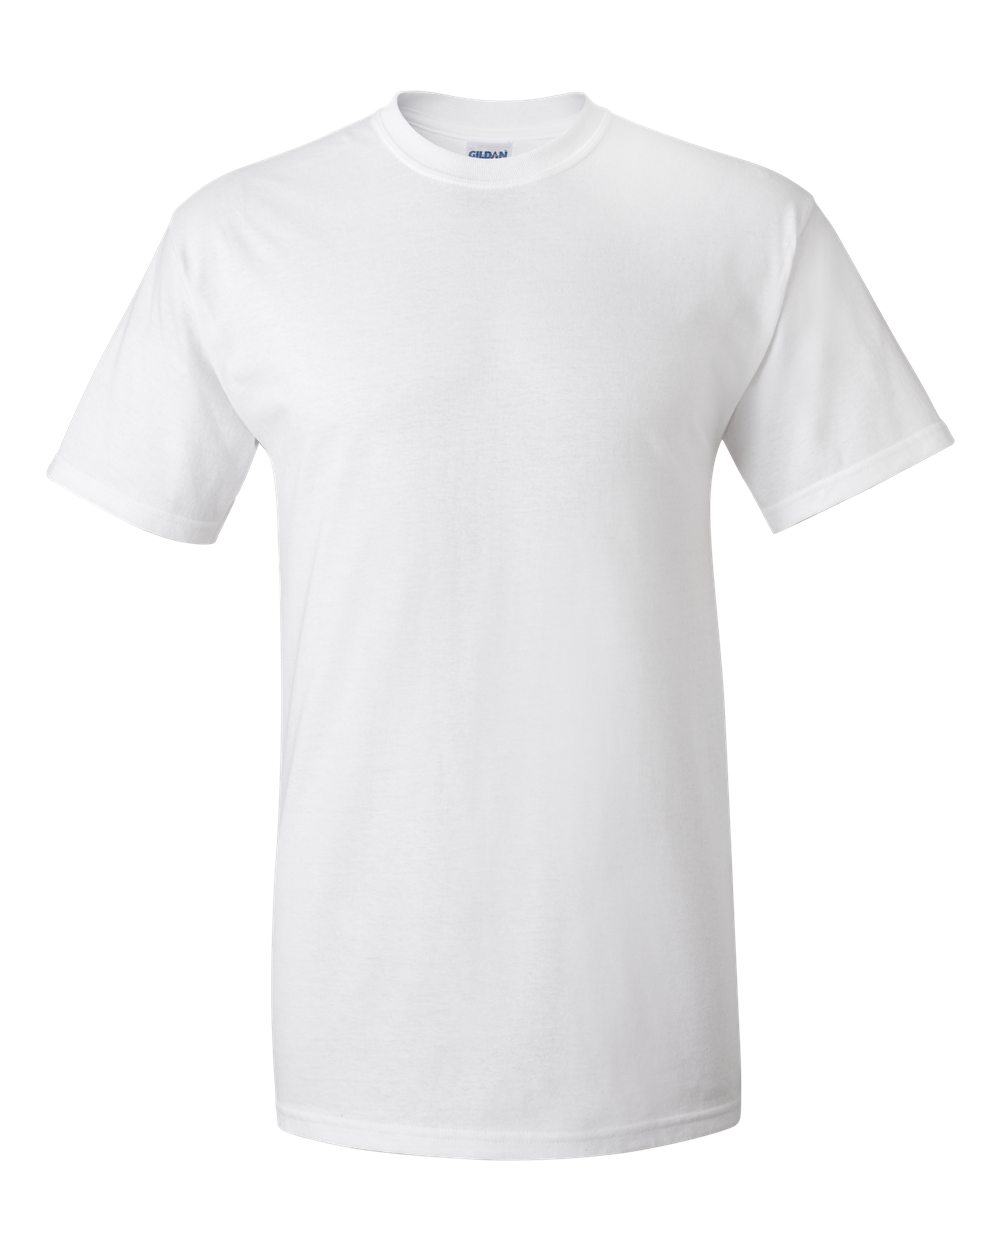 2000 Gildan Ultra Cotton 100% Cotton T-Shirt